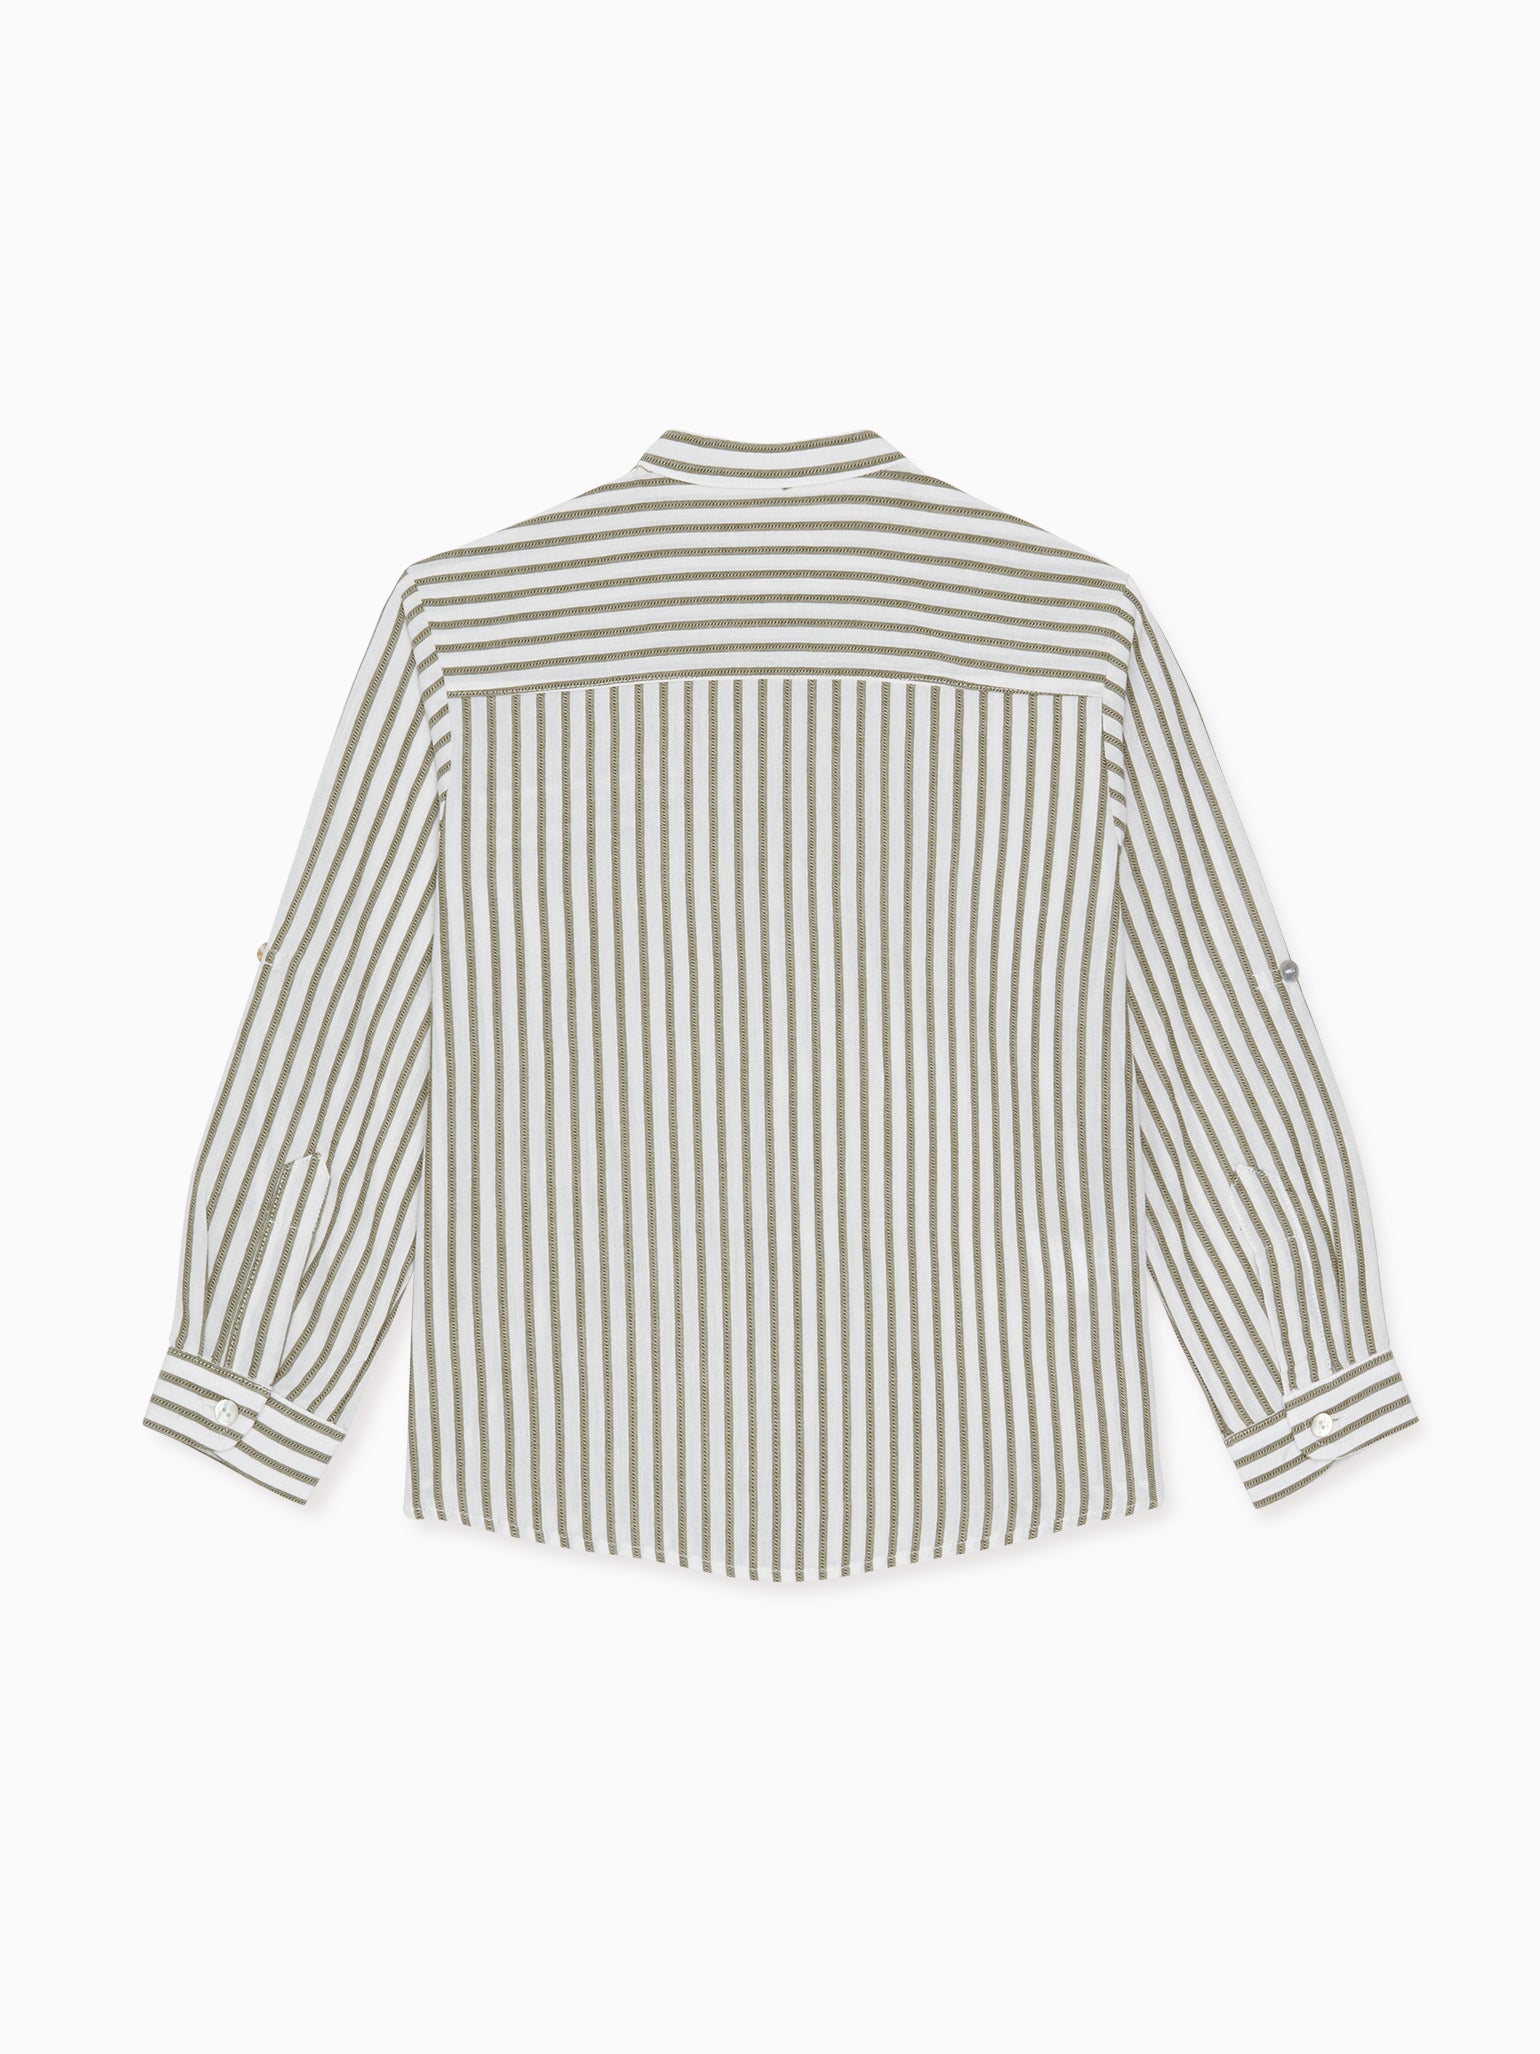 Olive Stripe Tomas Cotton Boy Shirt